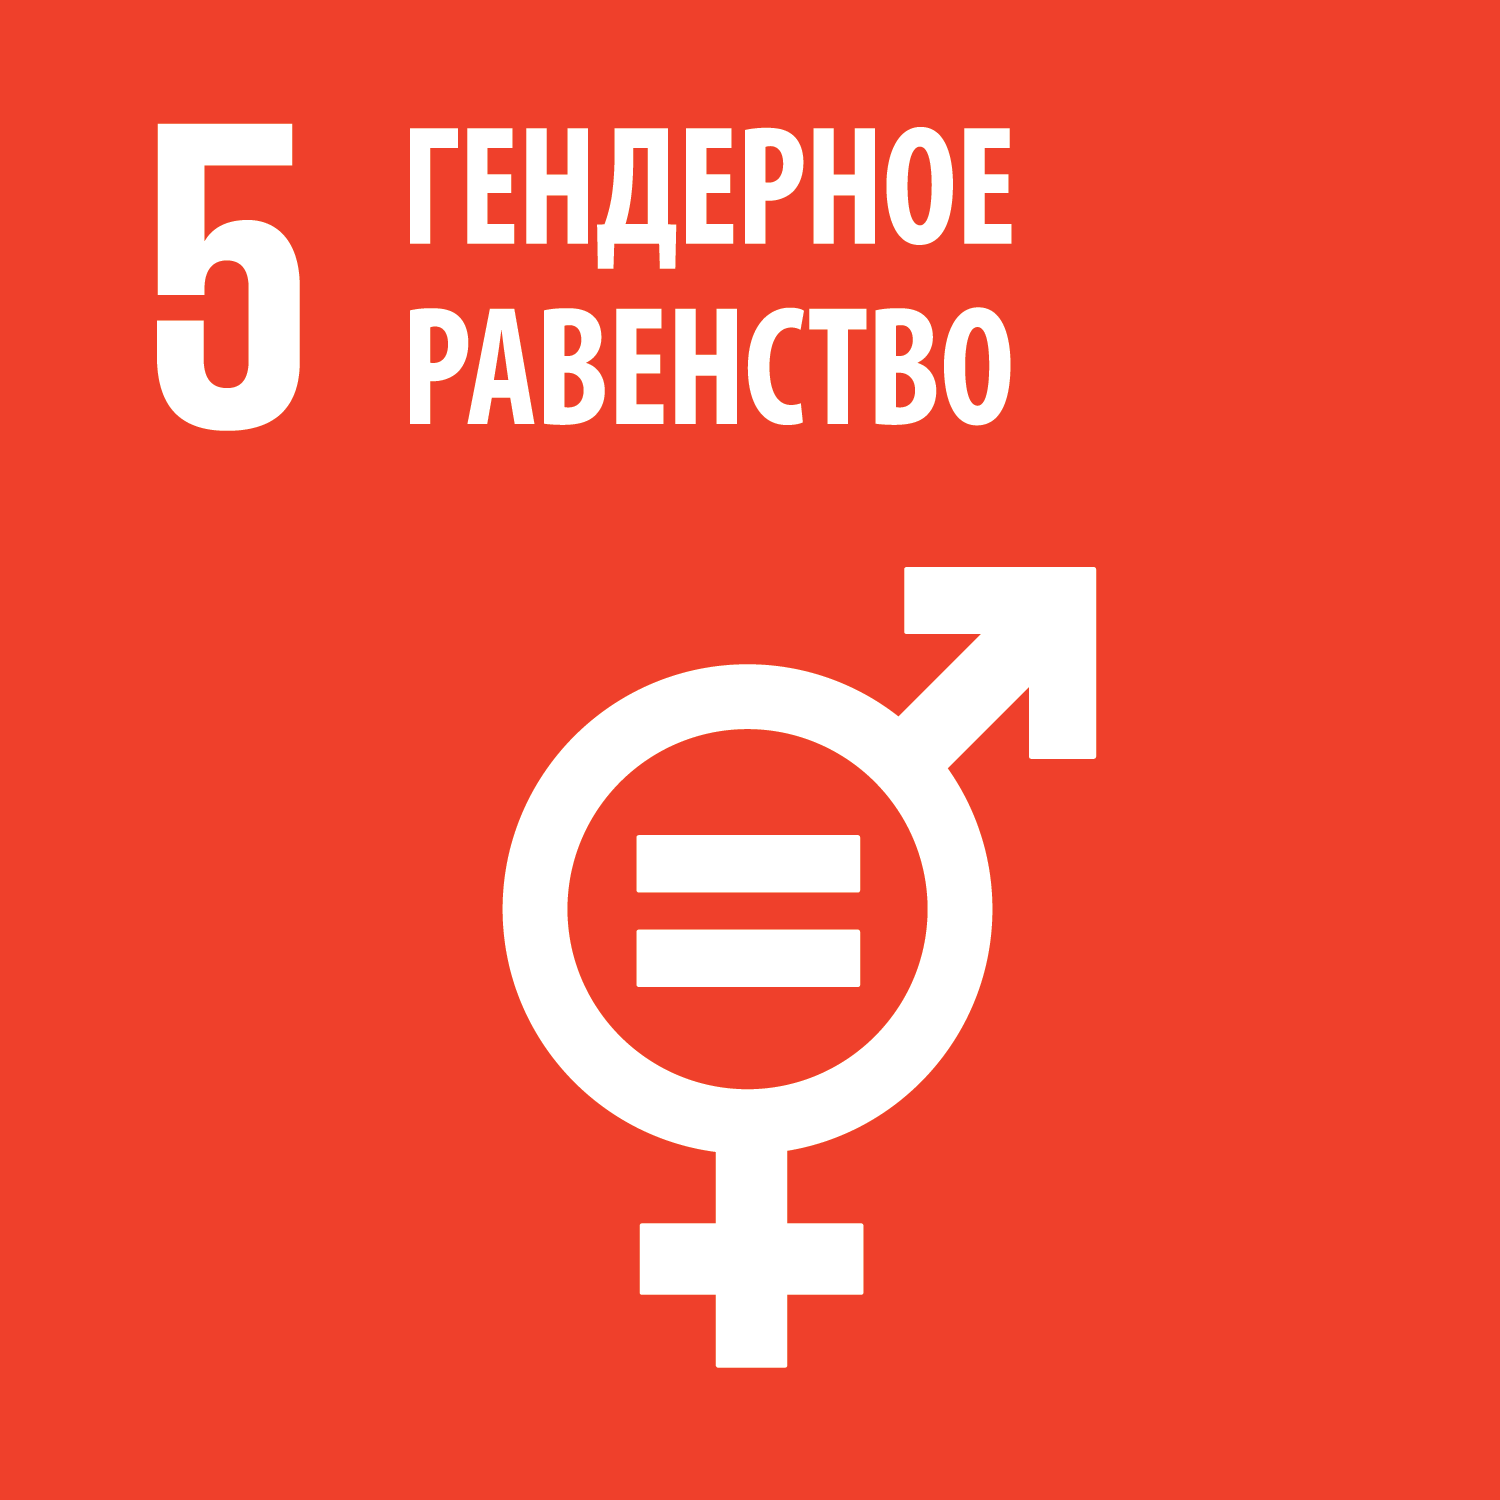 Достижение гендерного равенства до 2030 года - цель устойчивого развития № 5 — фото 3